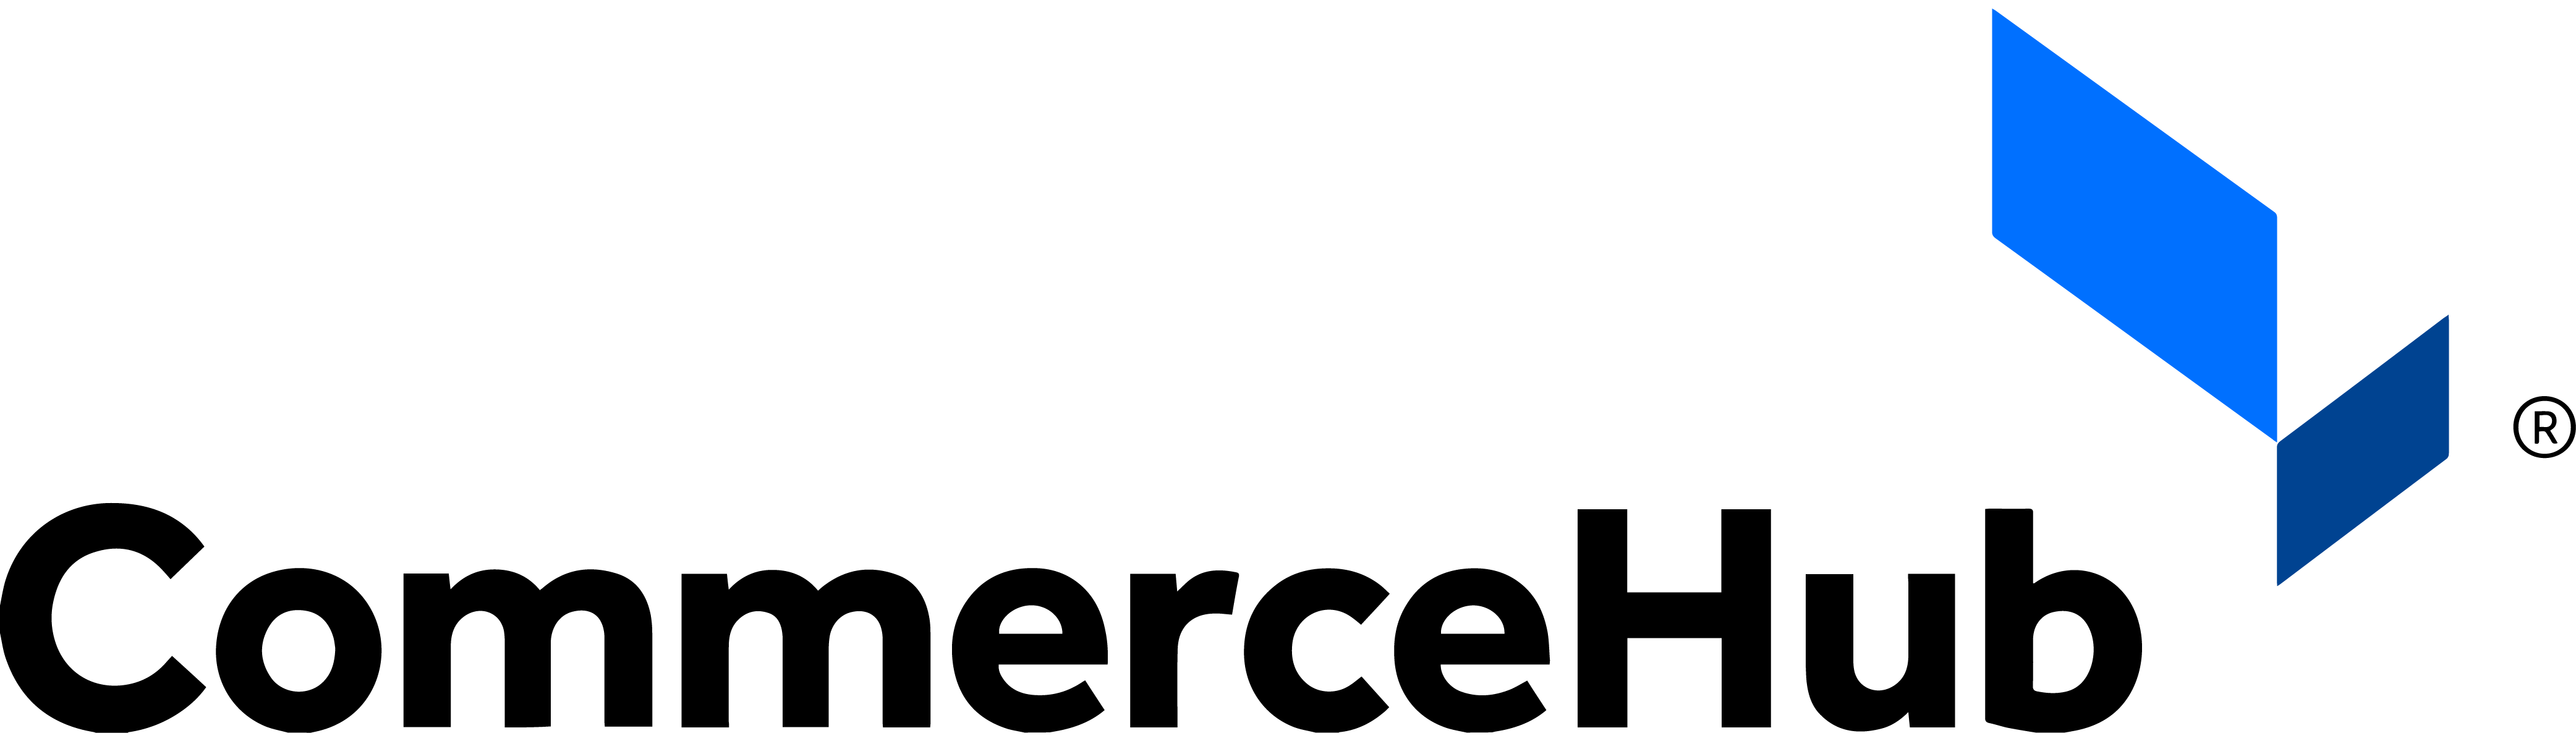 Commerce hub logo